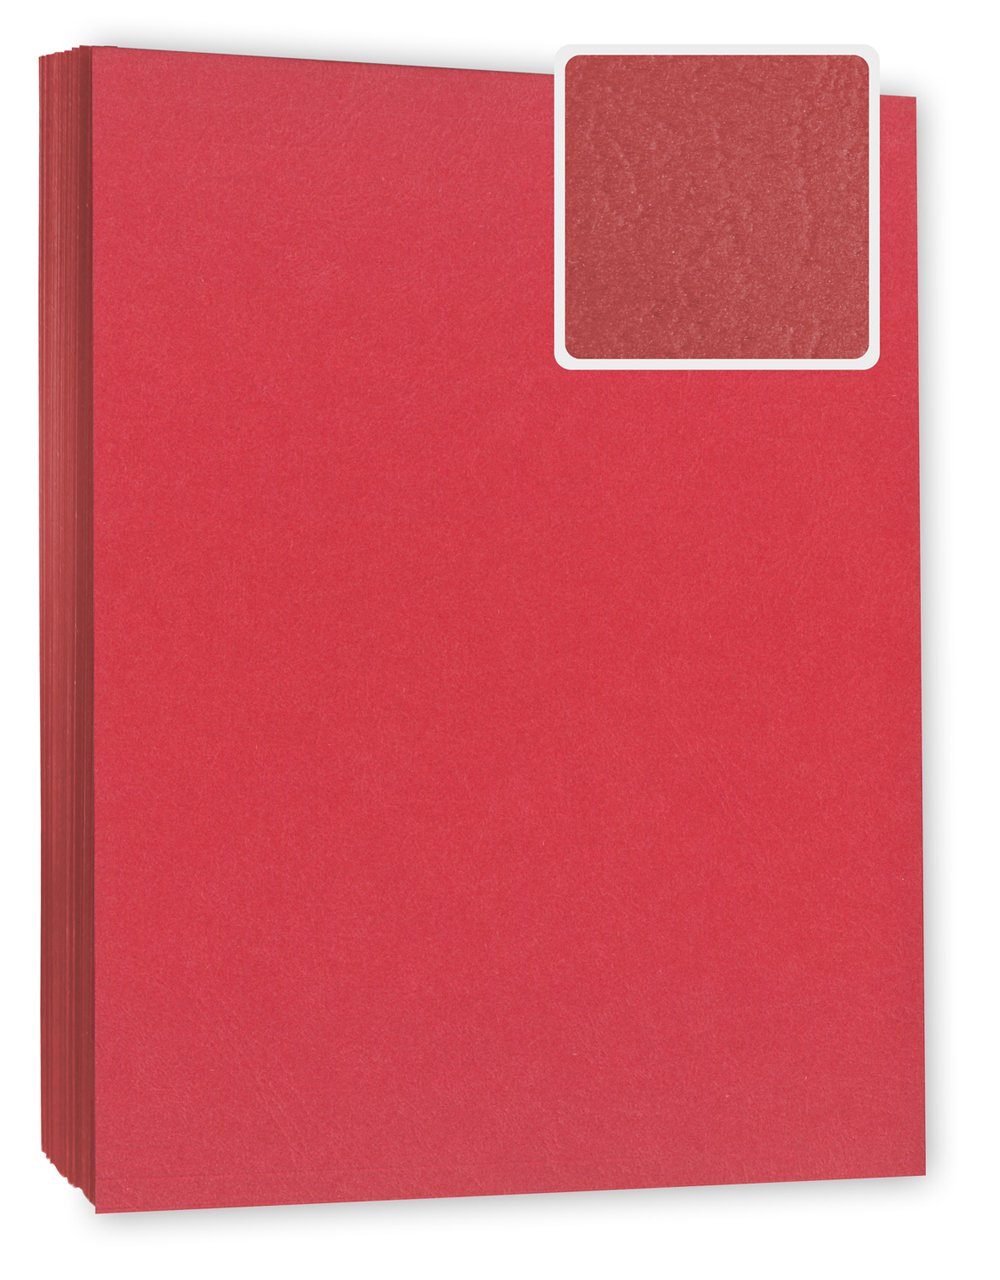 Kopierladen Berlin Papierkarton Bindekarton DIN Deckblatt, A4 Lederoptik in Stück rot 100 g/m², 240 